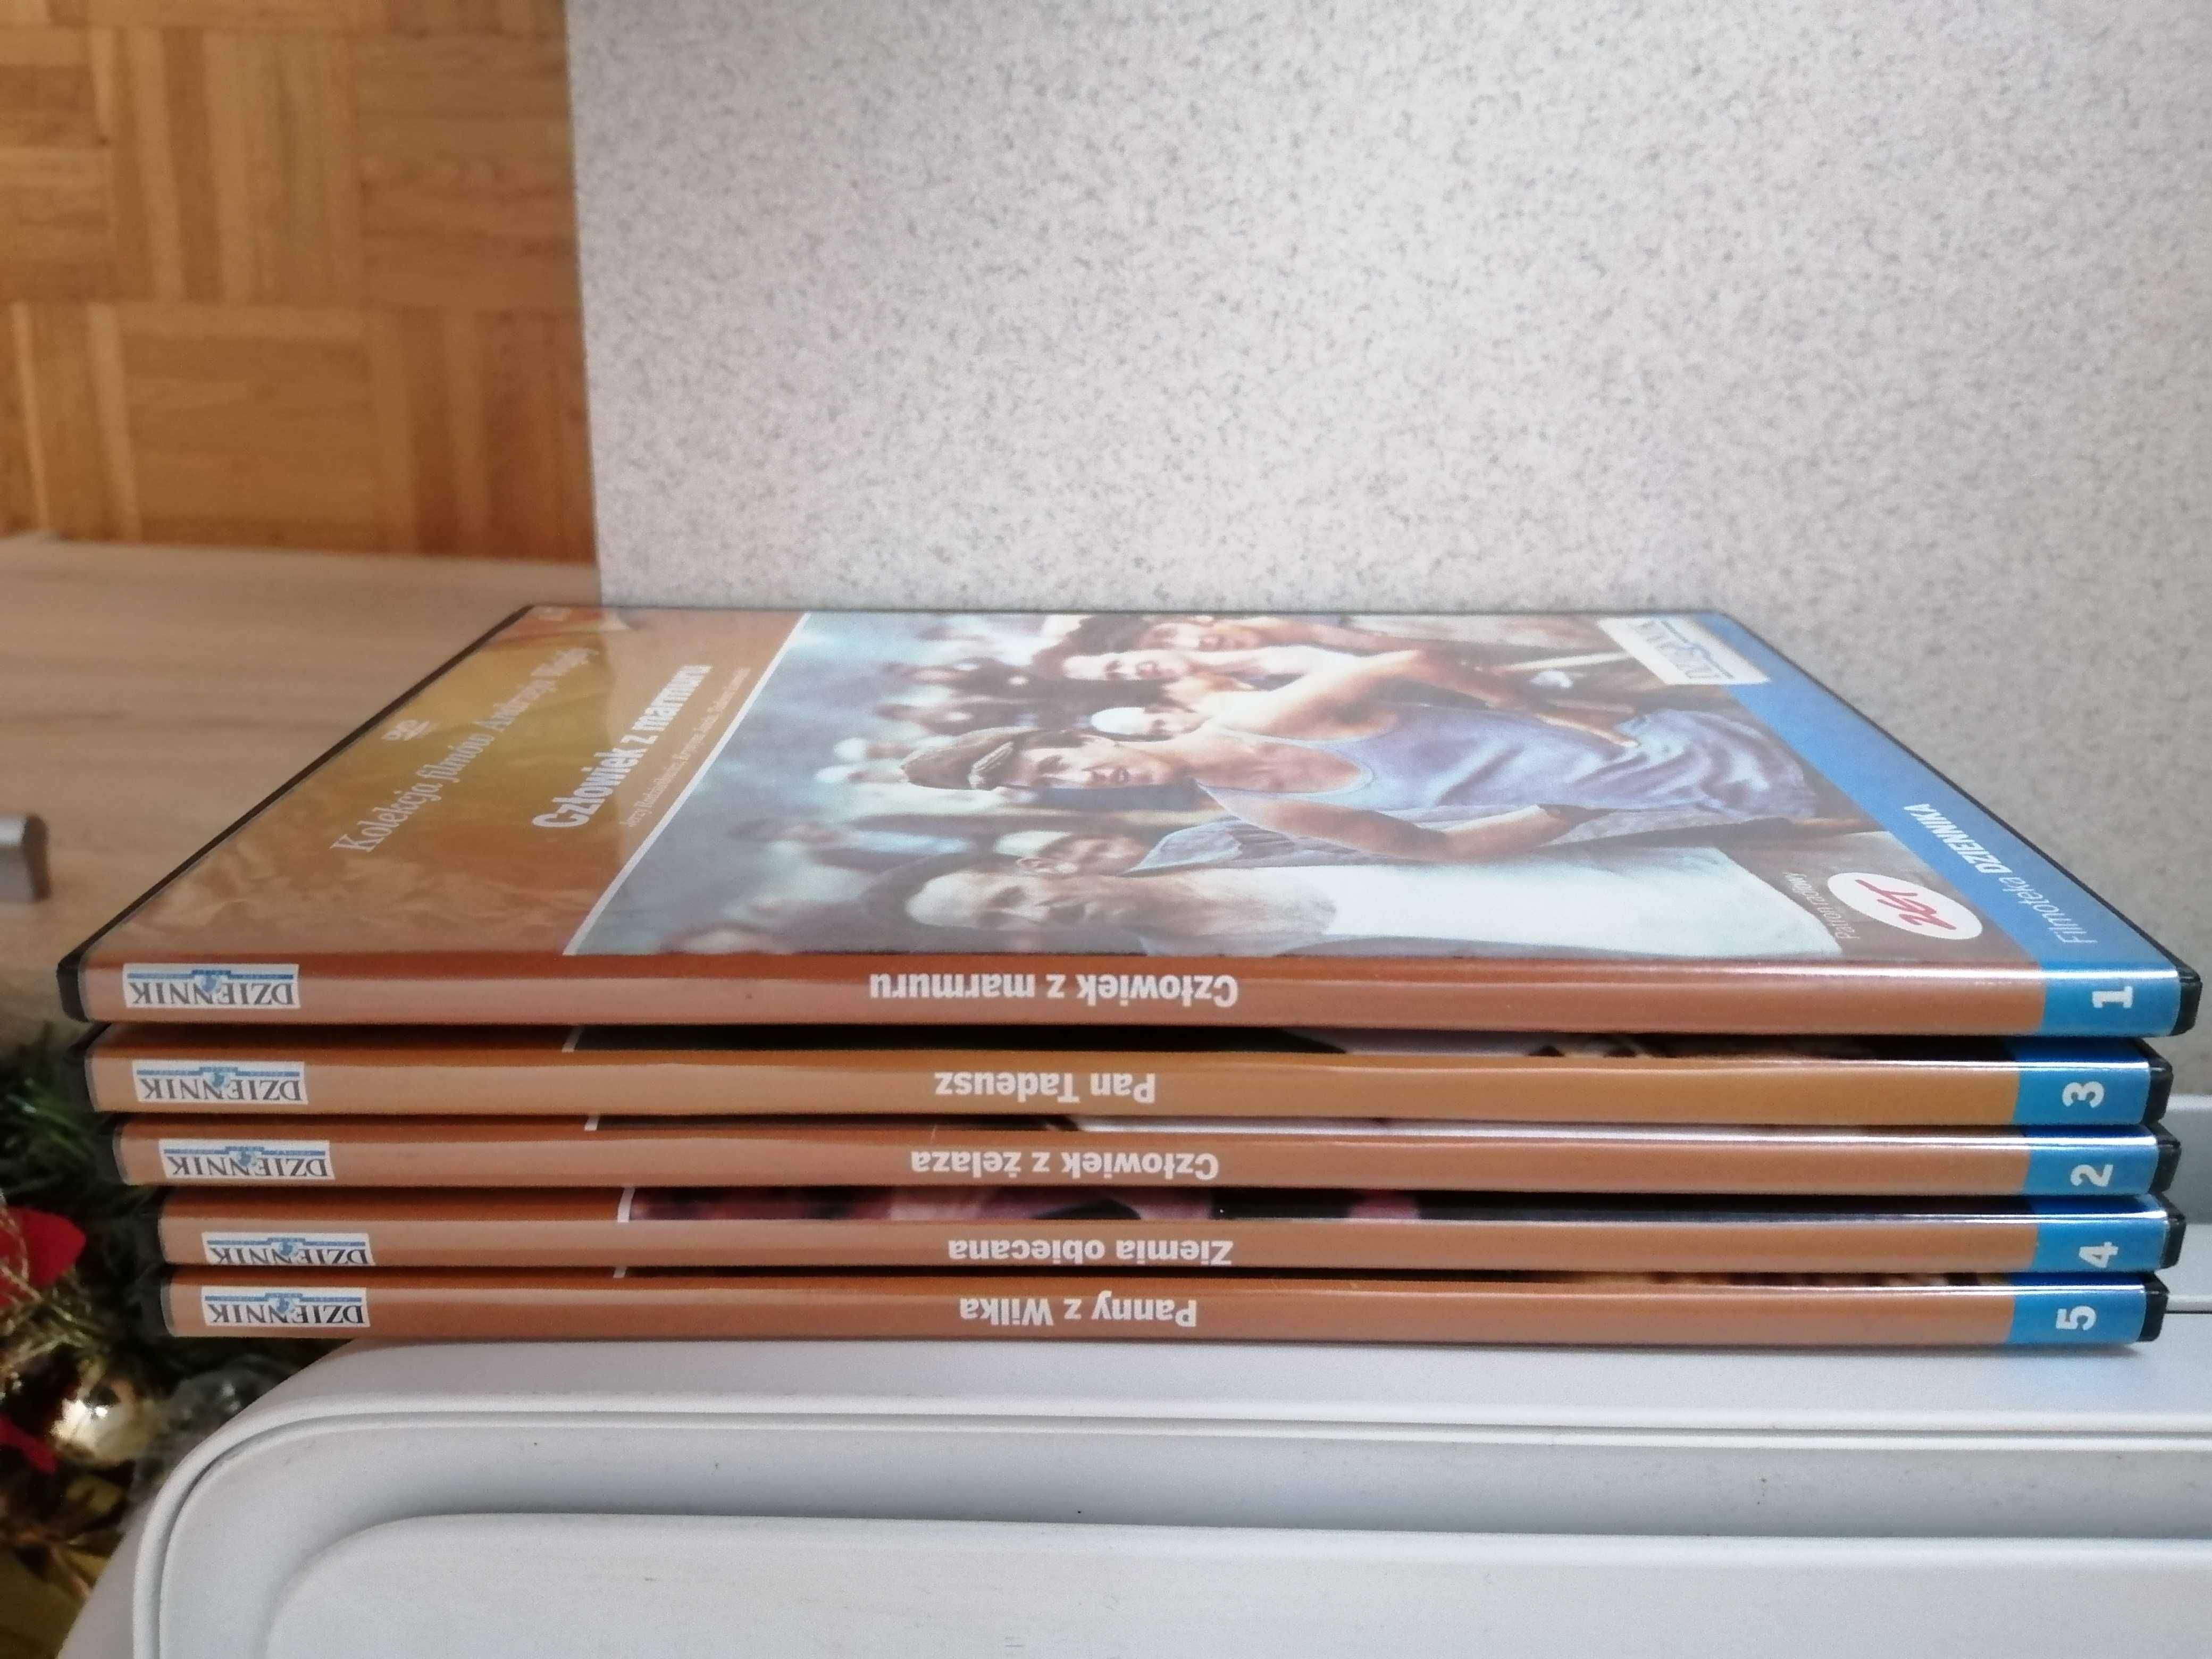 Dvd kolekcja filmów Andrzeja Wajdy